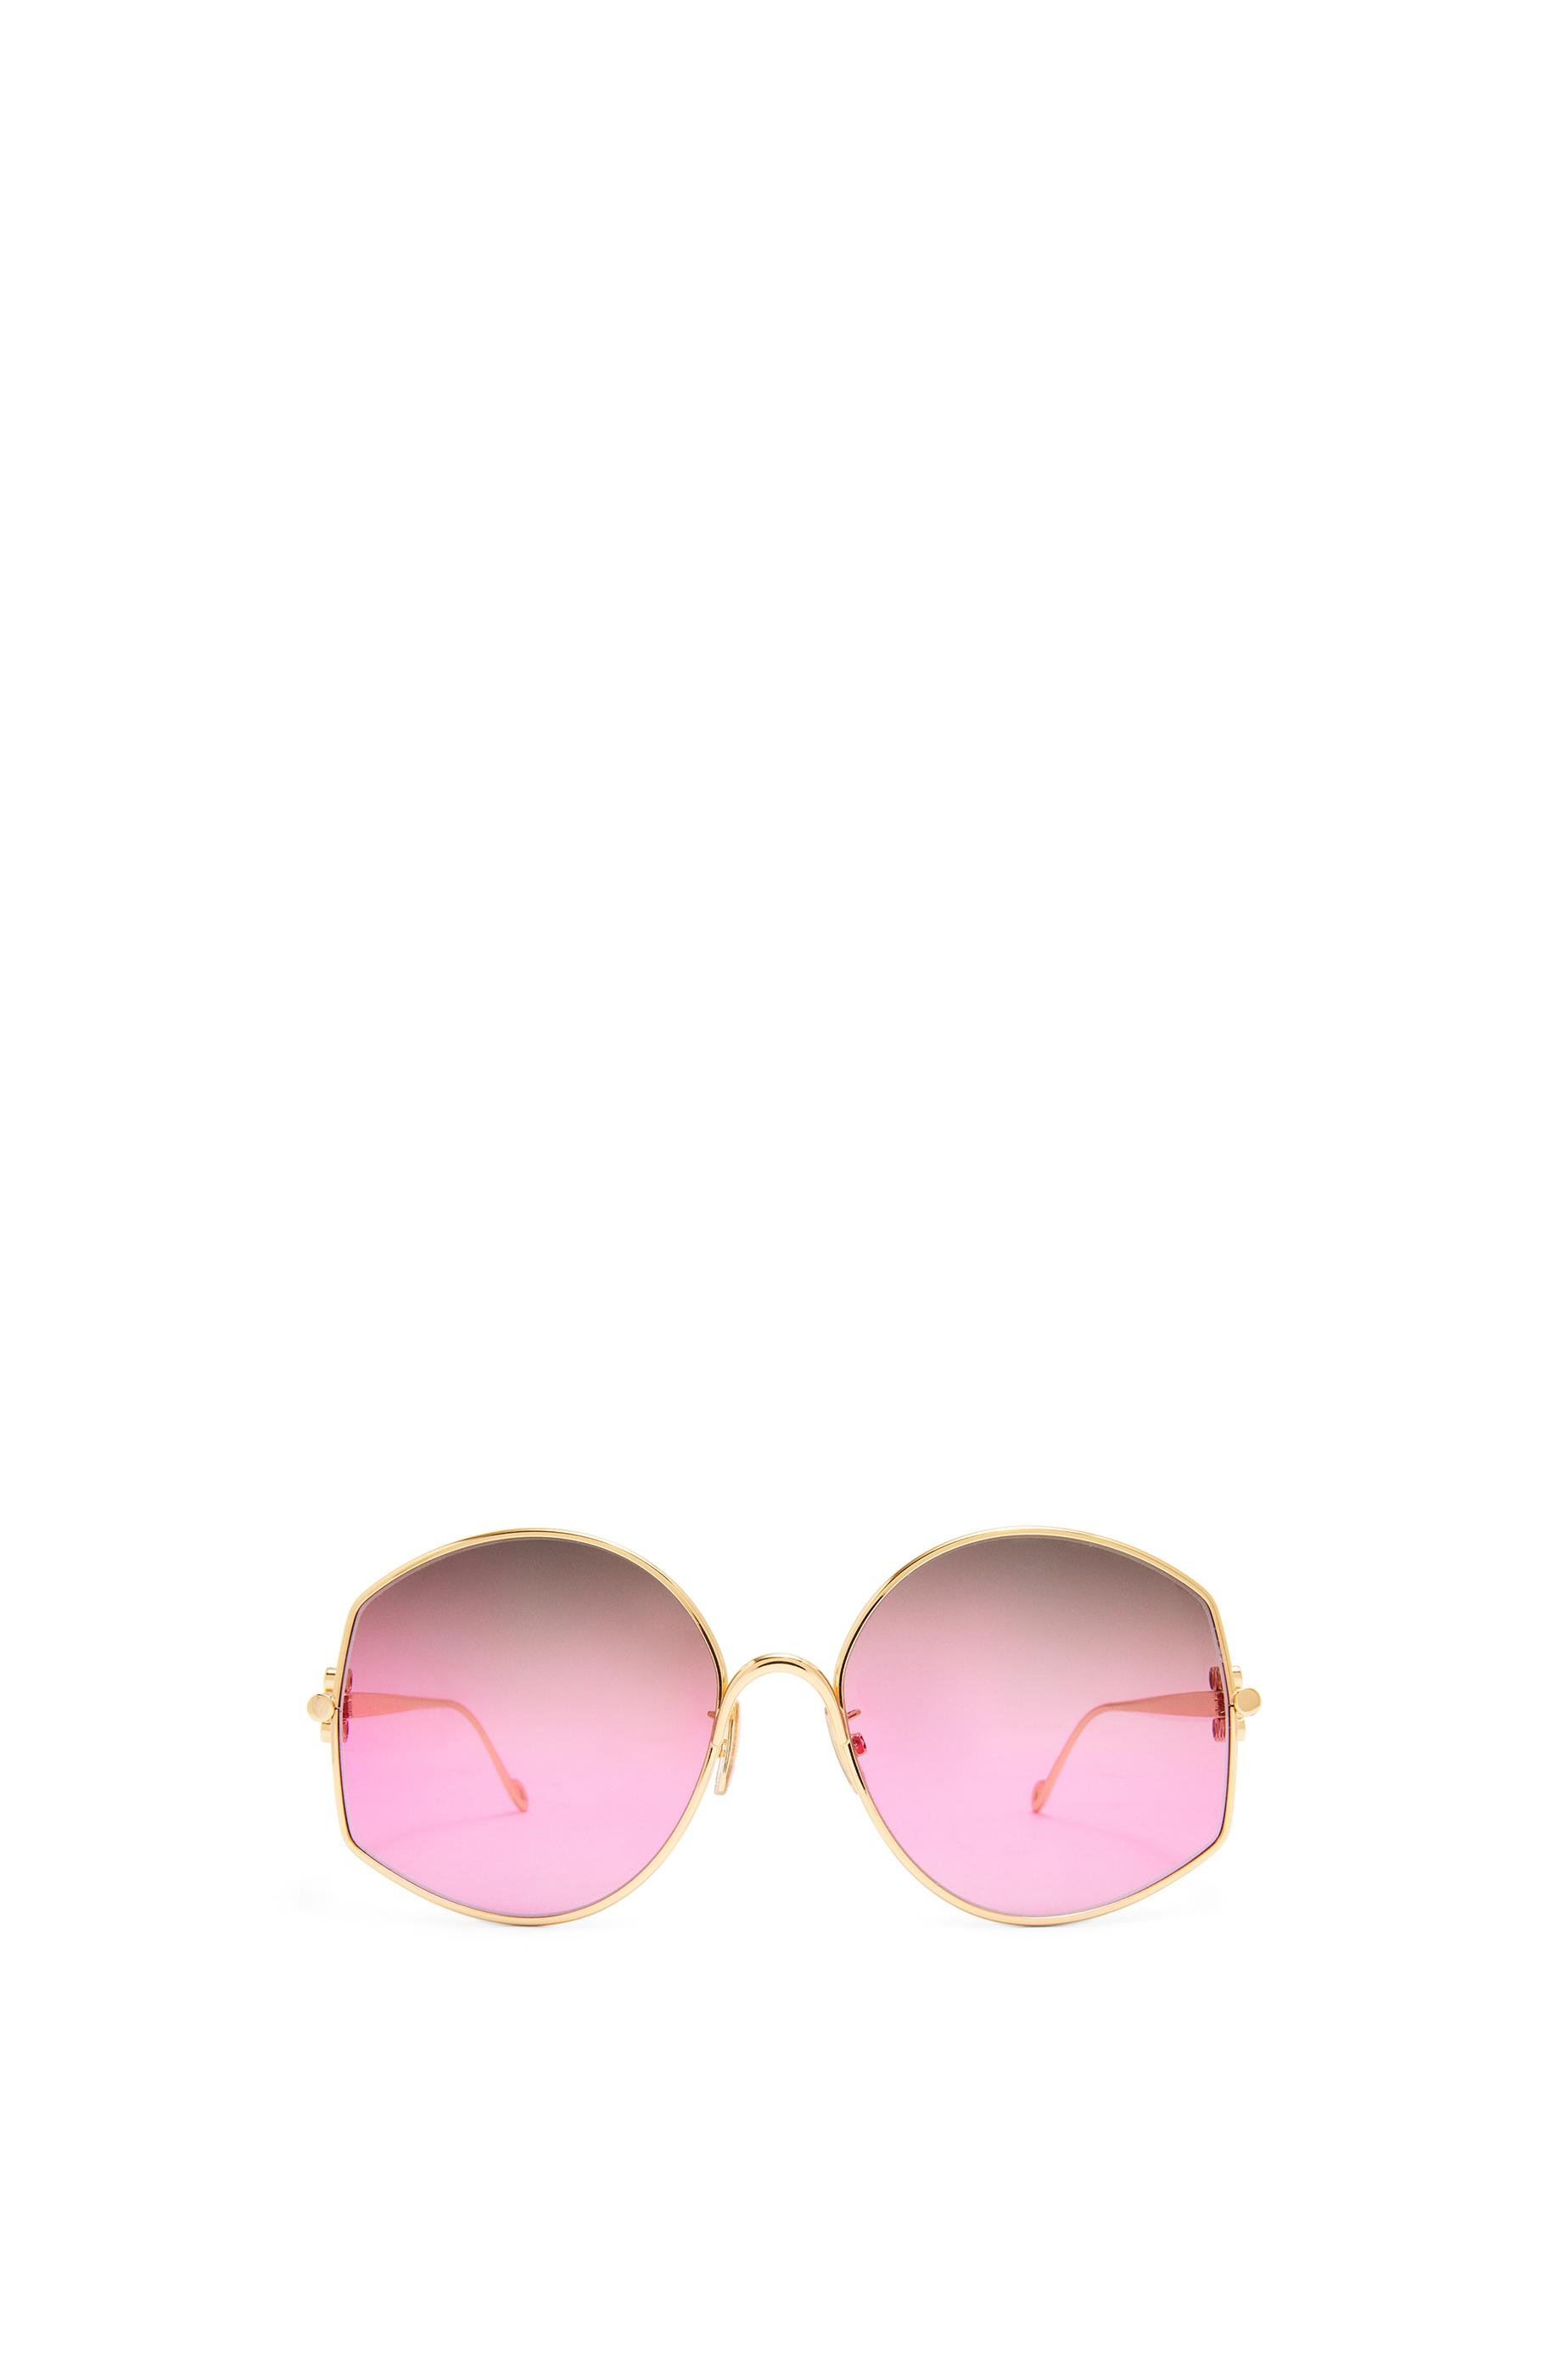 Oversize sunglasses in metal by LOEWE